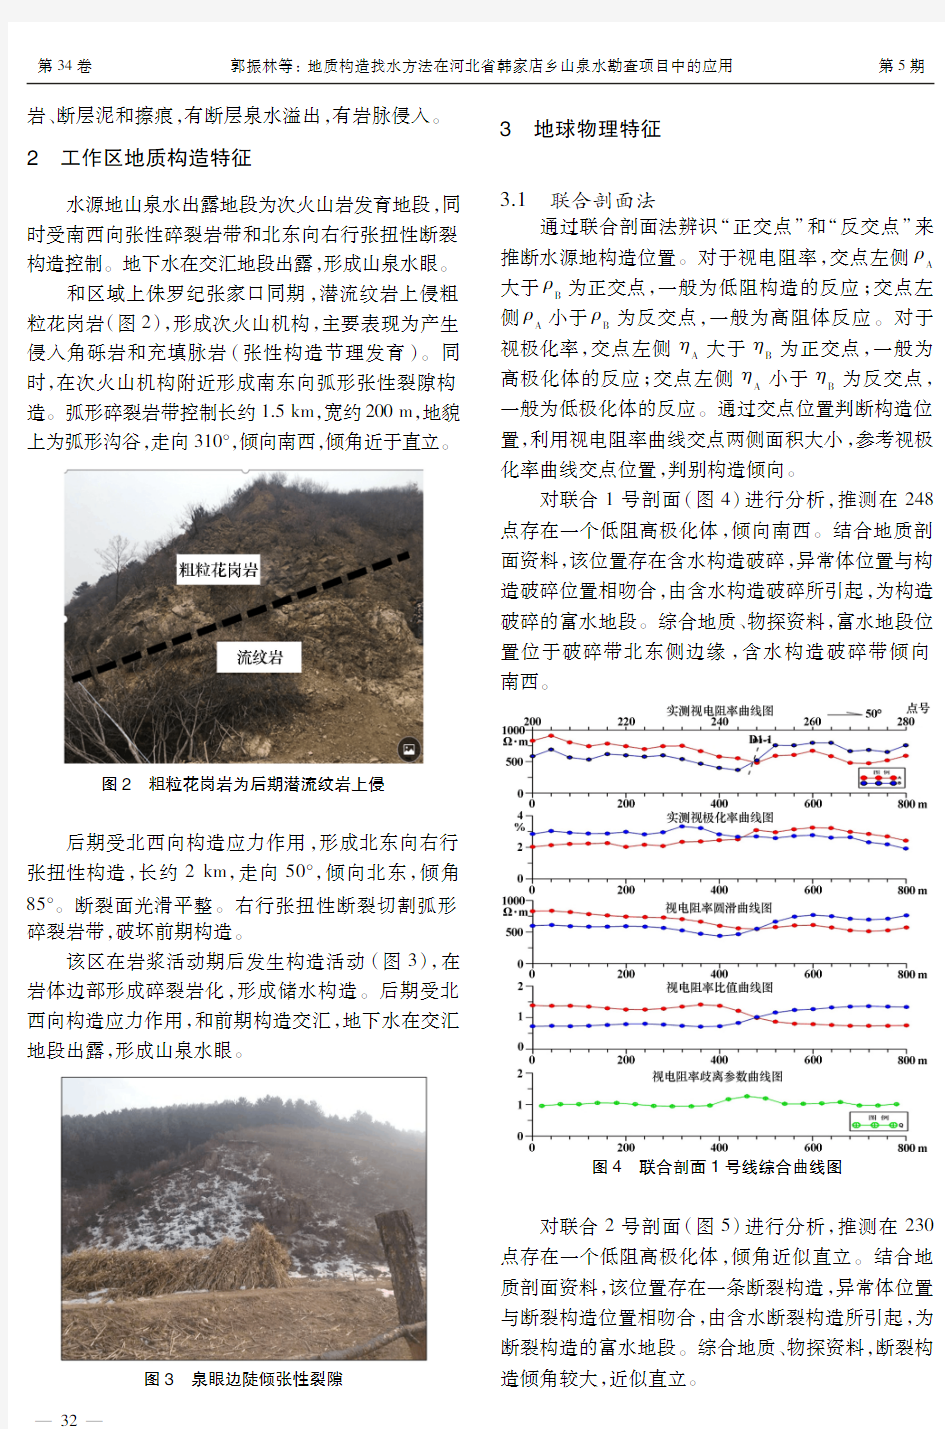 地质构造找水方法在河北省韩家店乡山泉水勘查项目中的应用